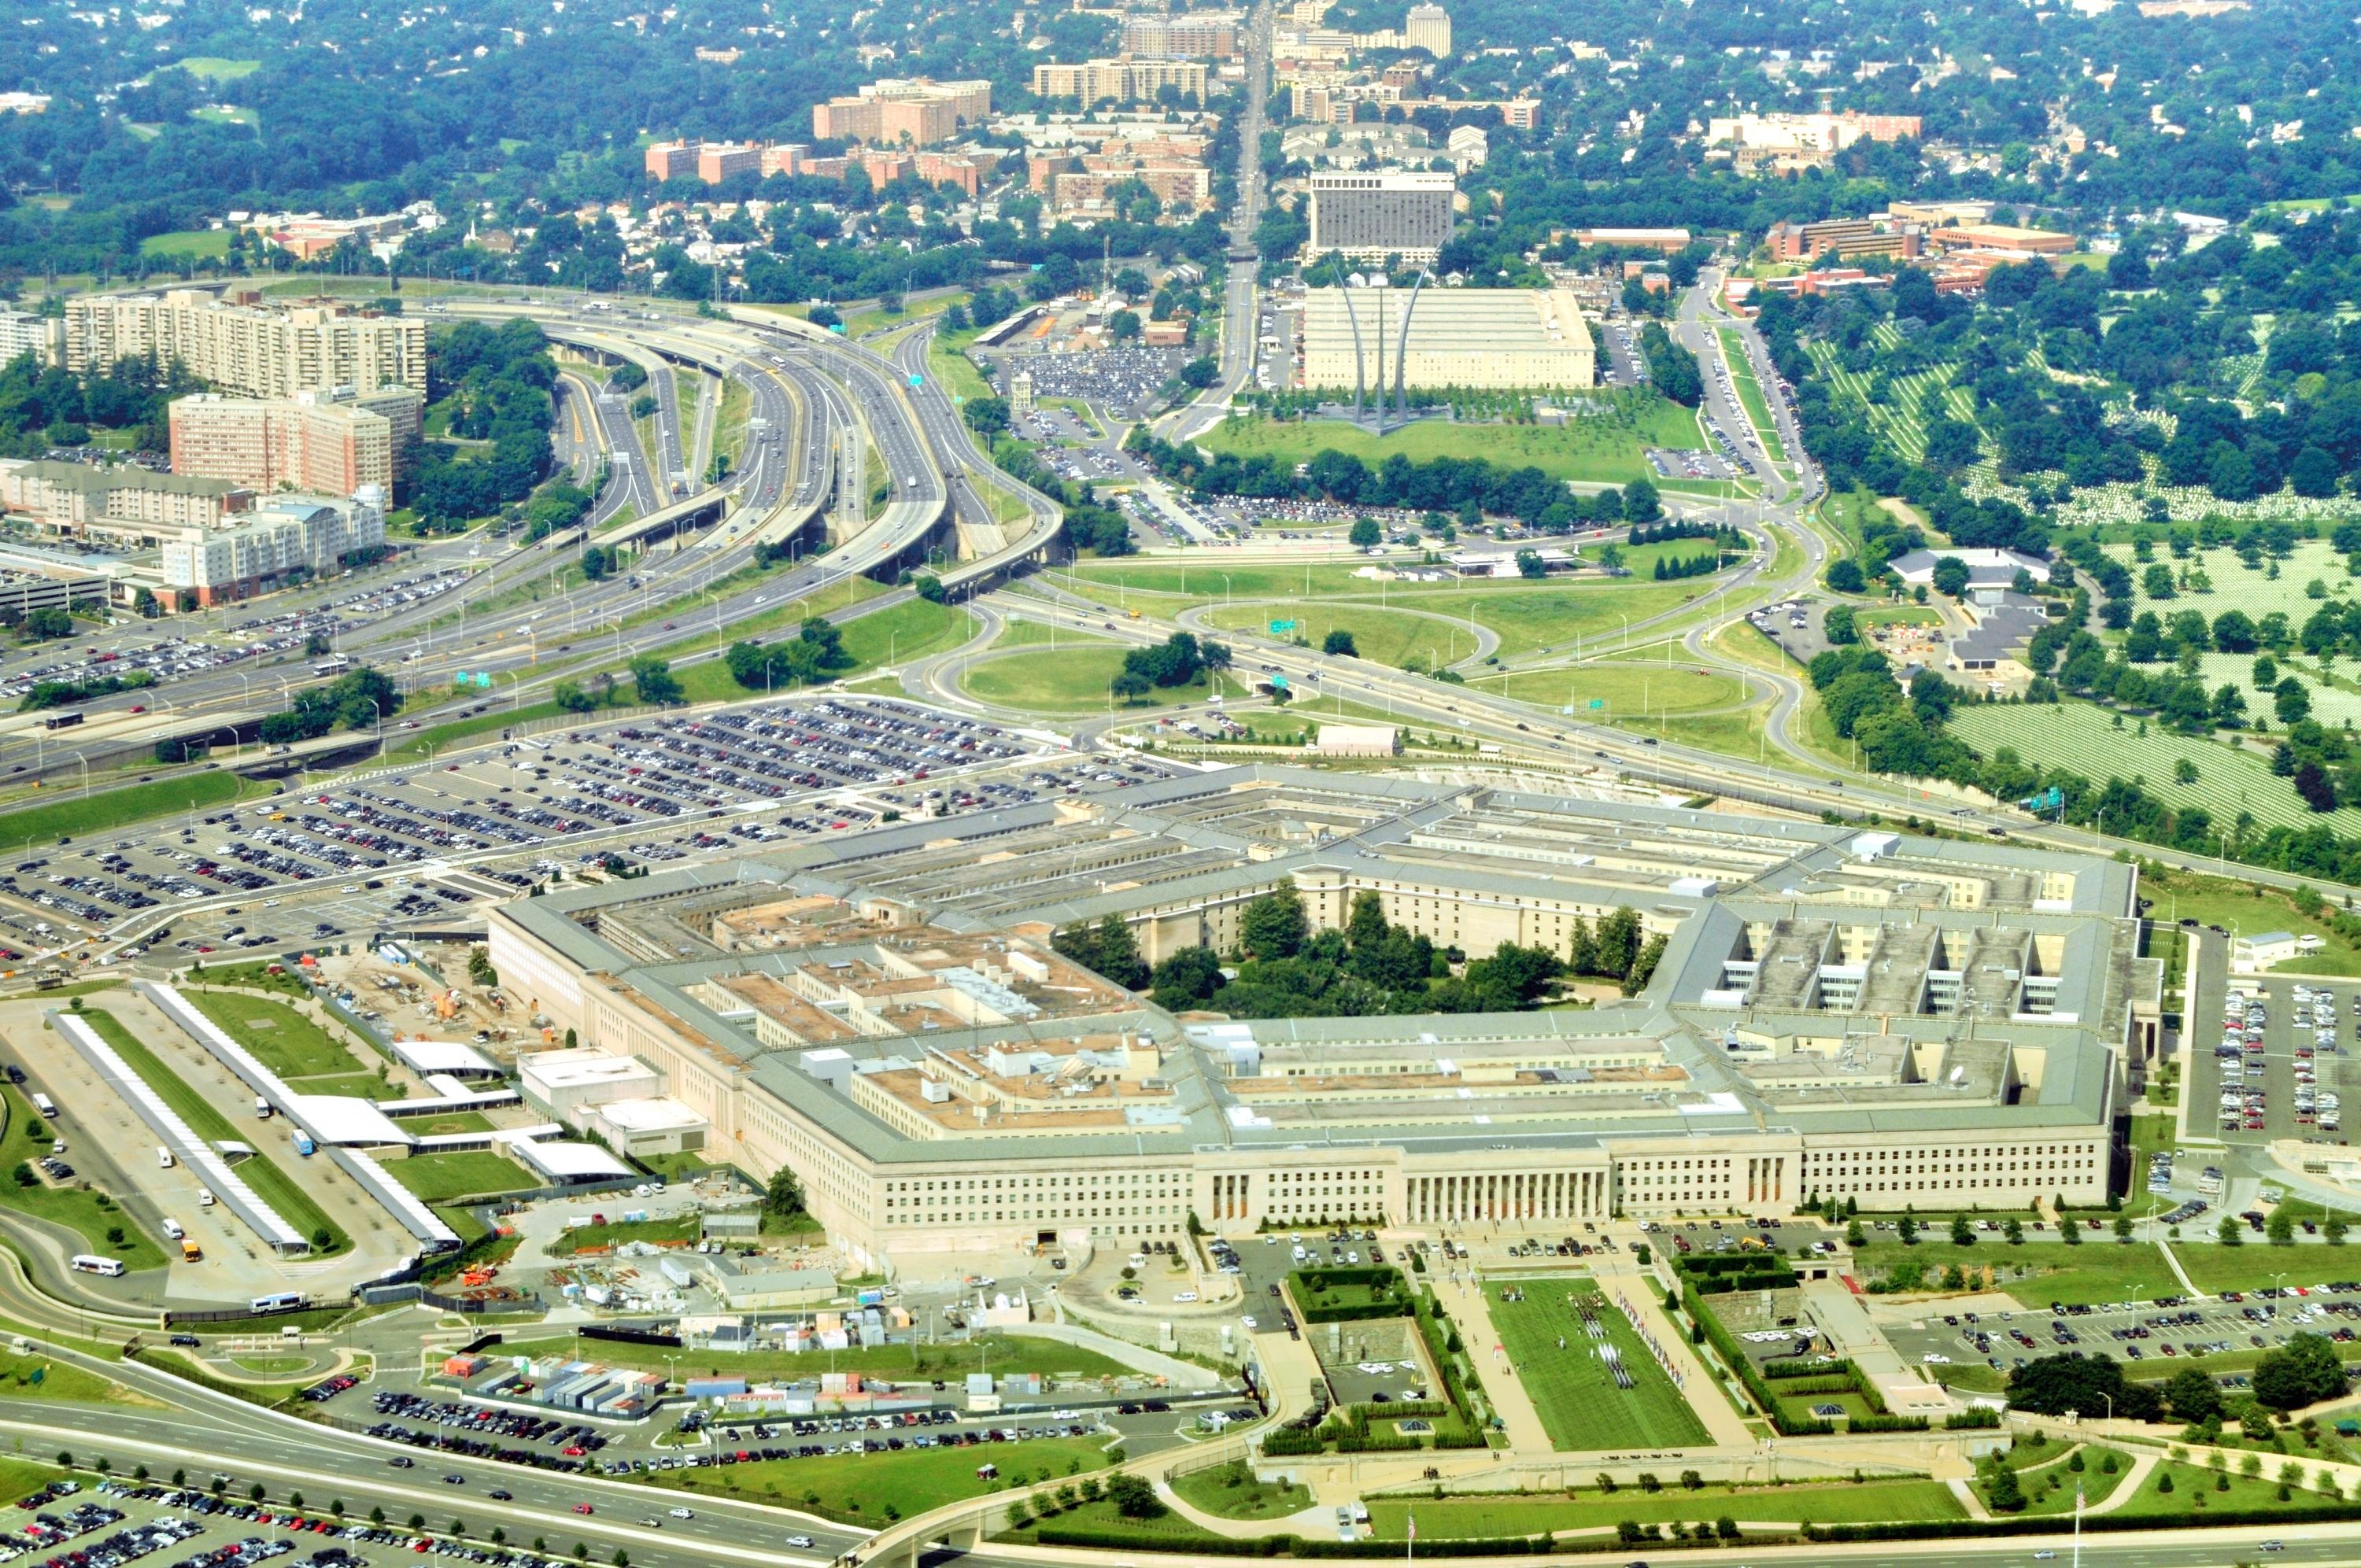 Attraktionen in der Nähe des Pentagon: Bewertungen, Tickets, Transport, 3000x2000 HD Desktop